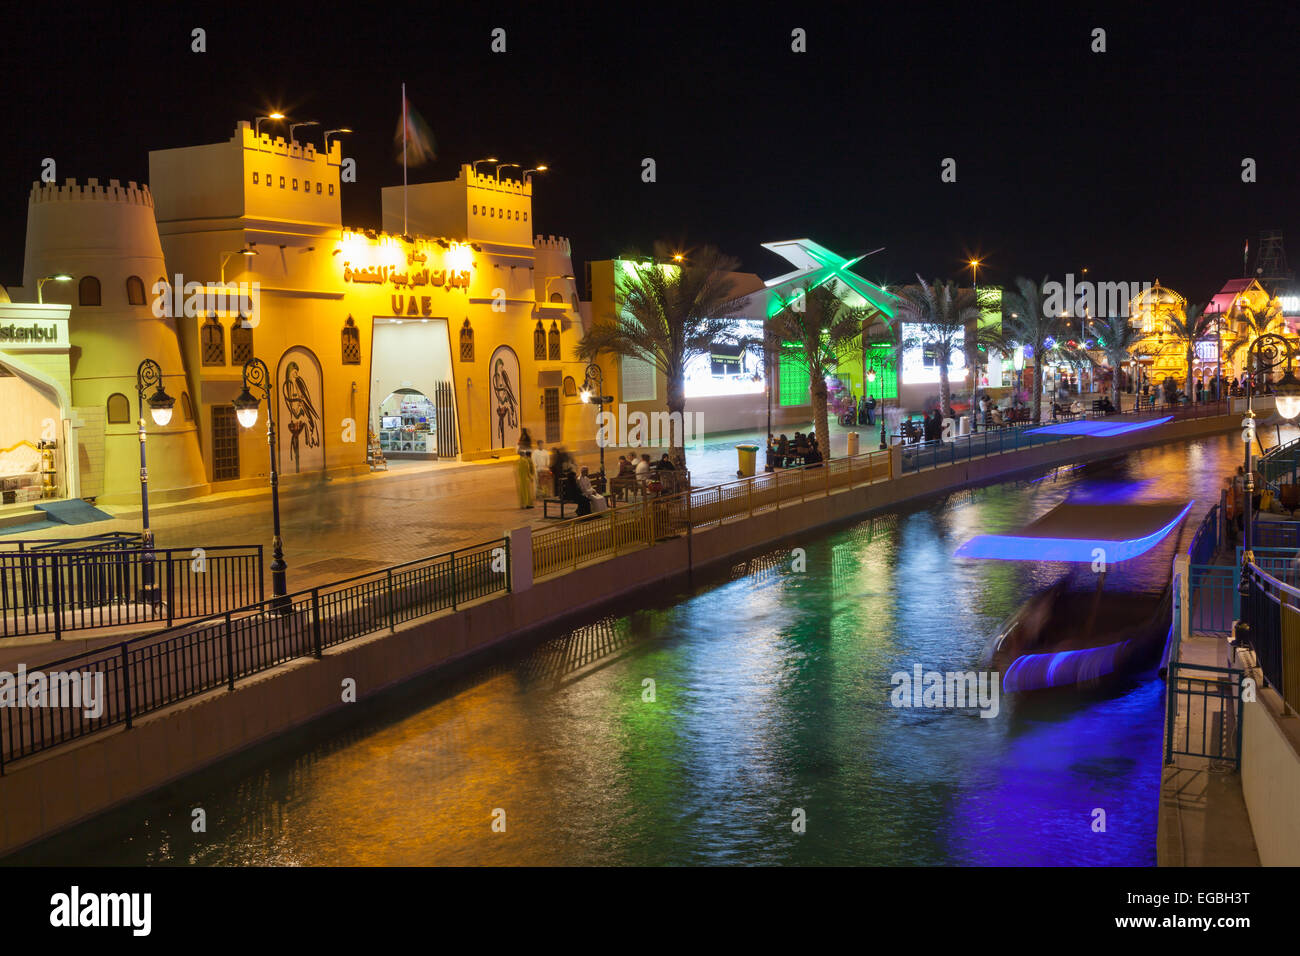 Canal au Village Mondial à Dubaï illuminée la nuit Banque D'Images